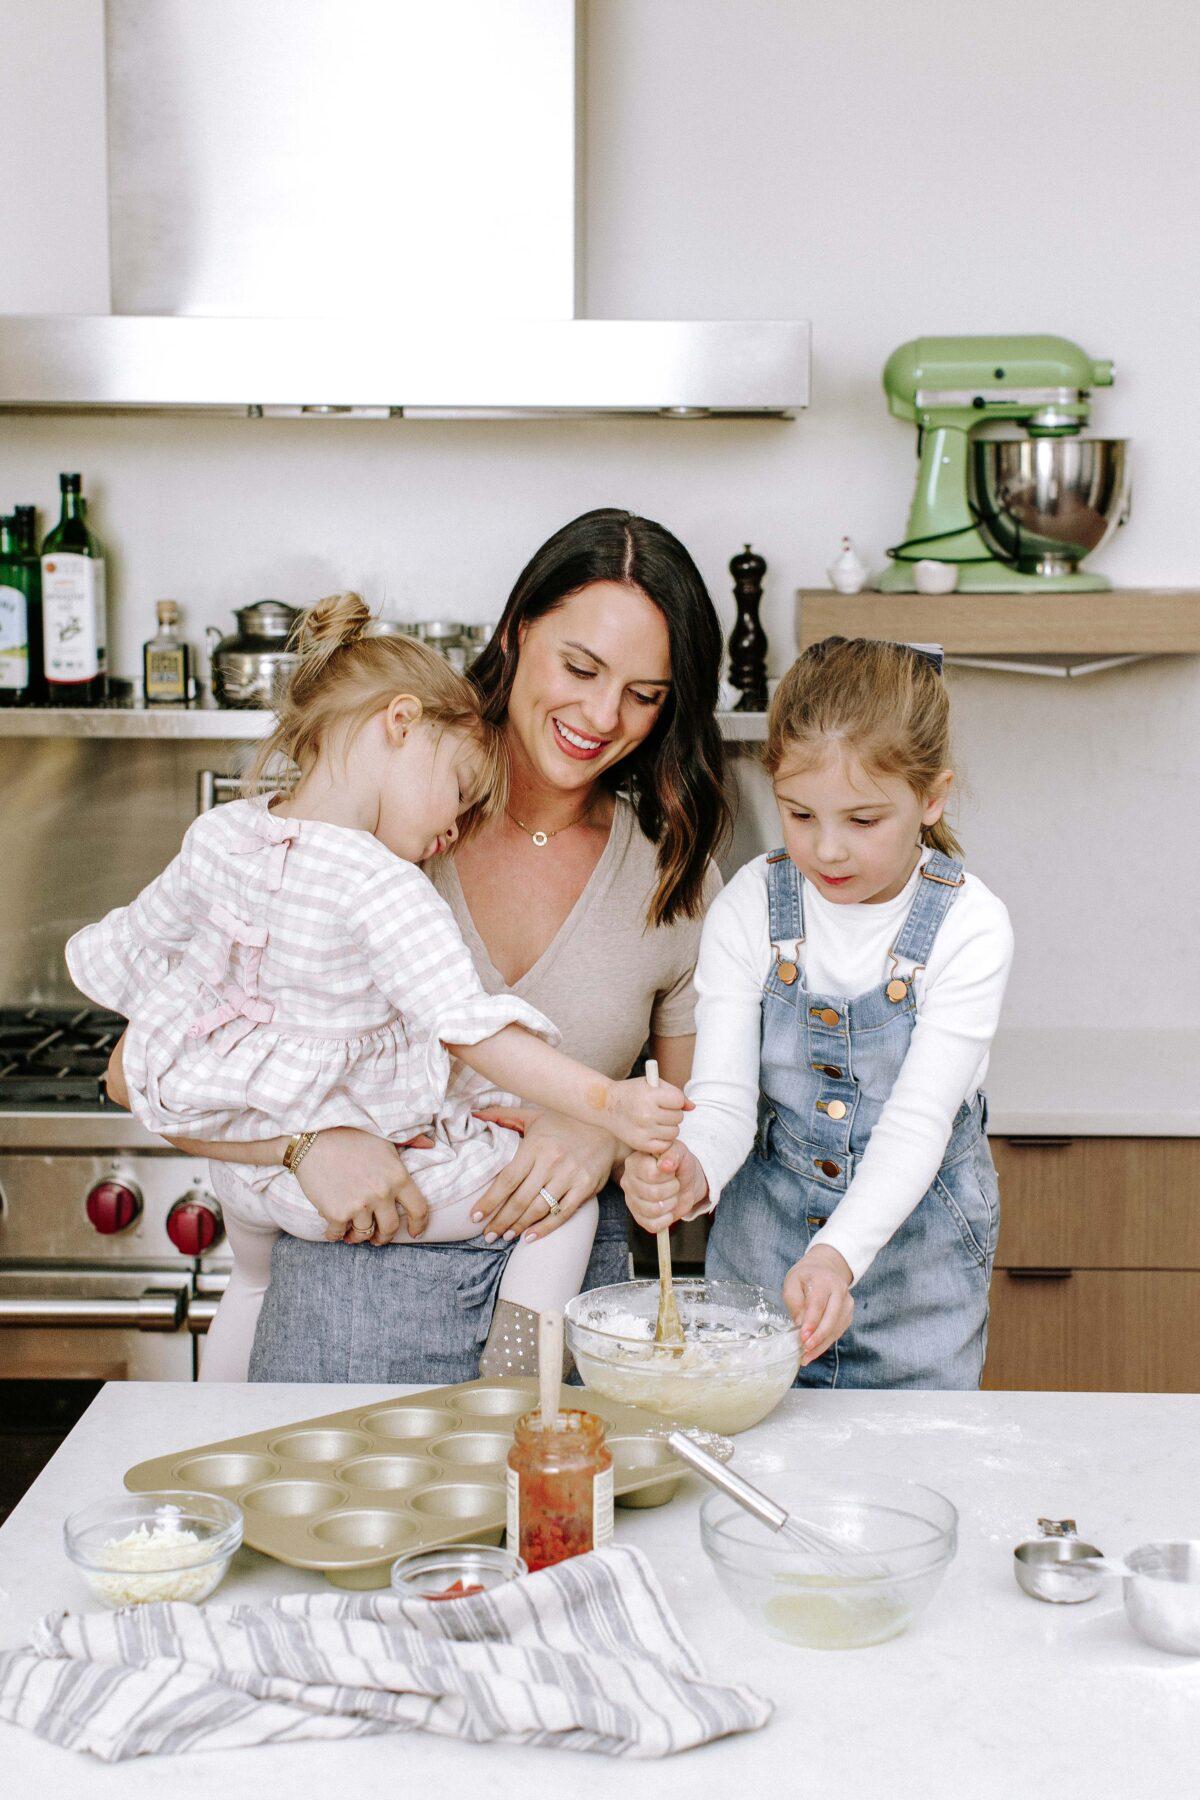 Alex Snodgrass in the kitchen with her daughters. (Kristen Kilpatrick)